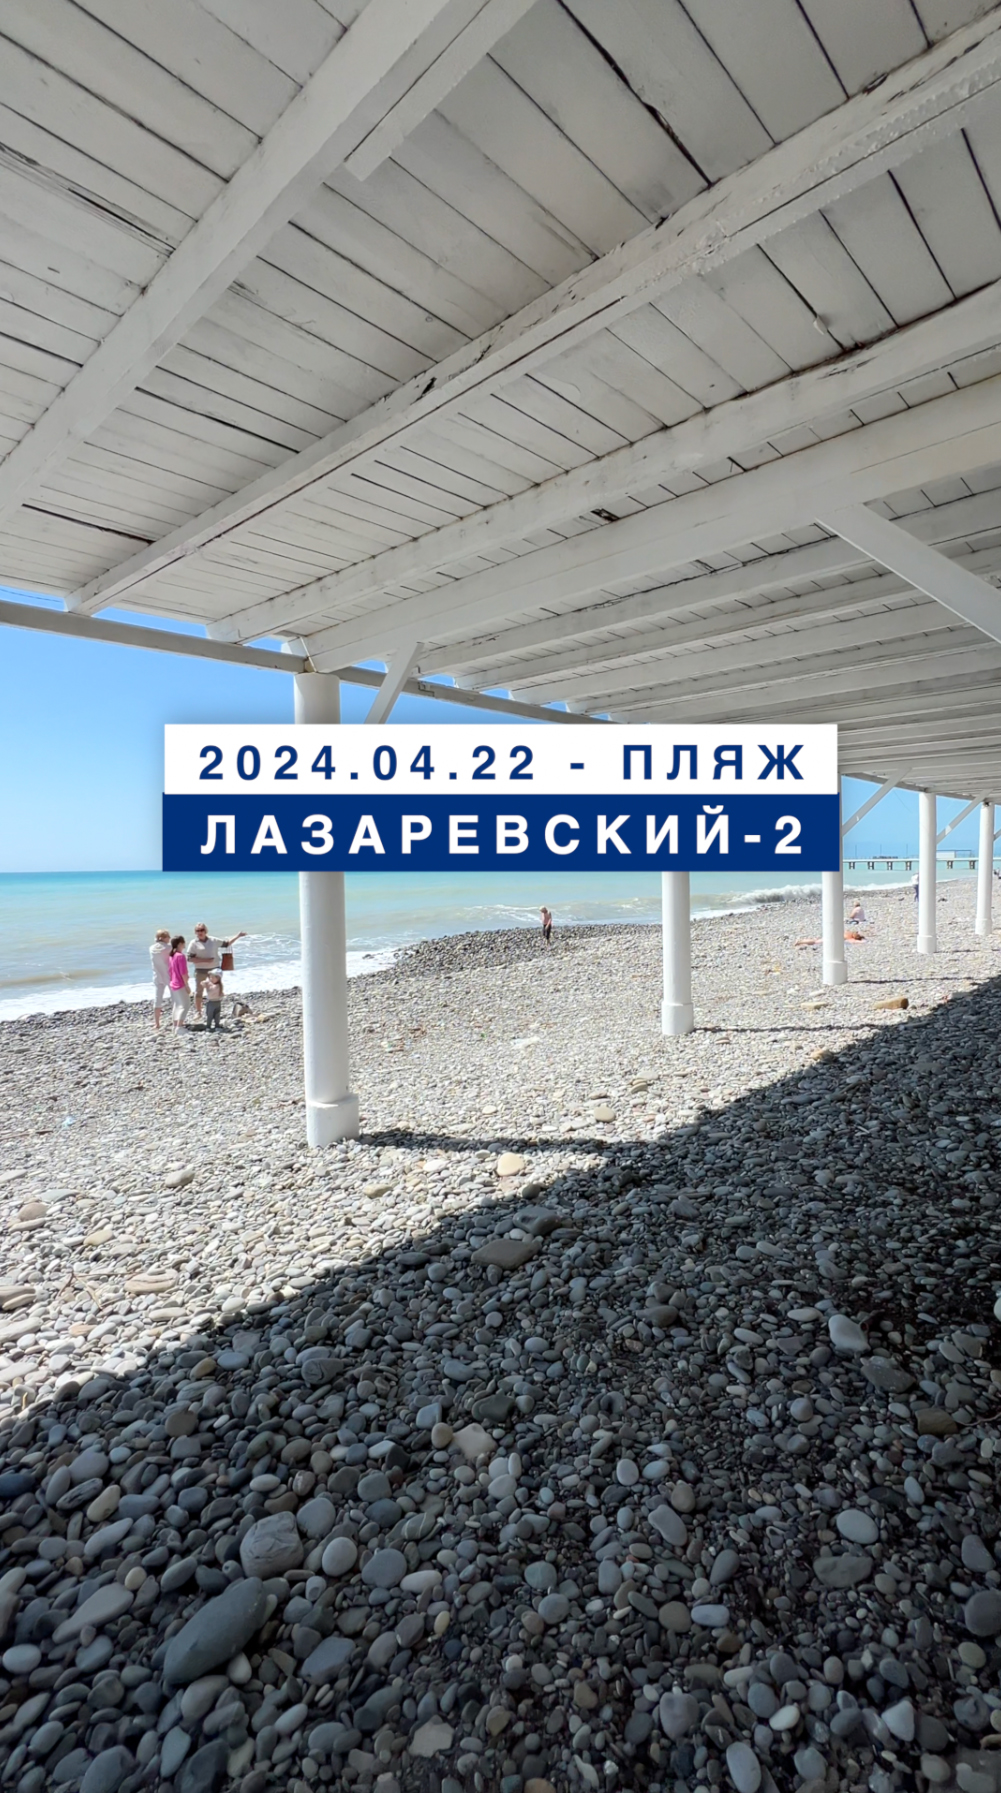 Обстановка на море в Лазаревском 22 апреля 2024, пляж Лазаревский-2.